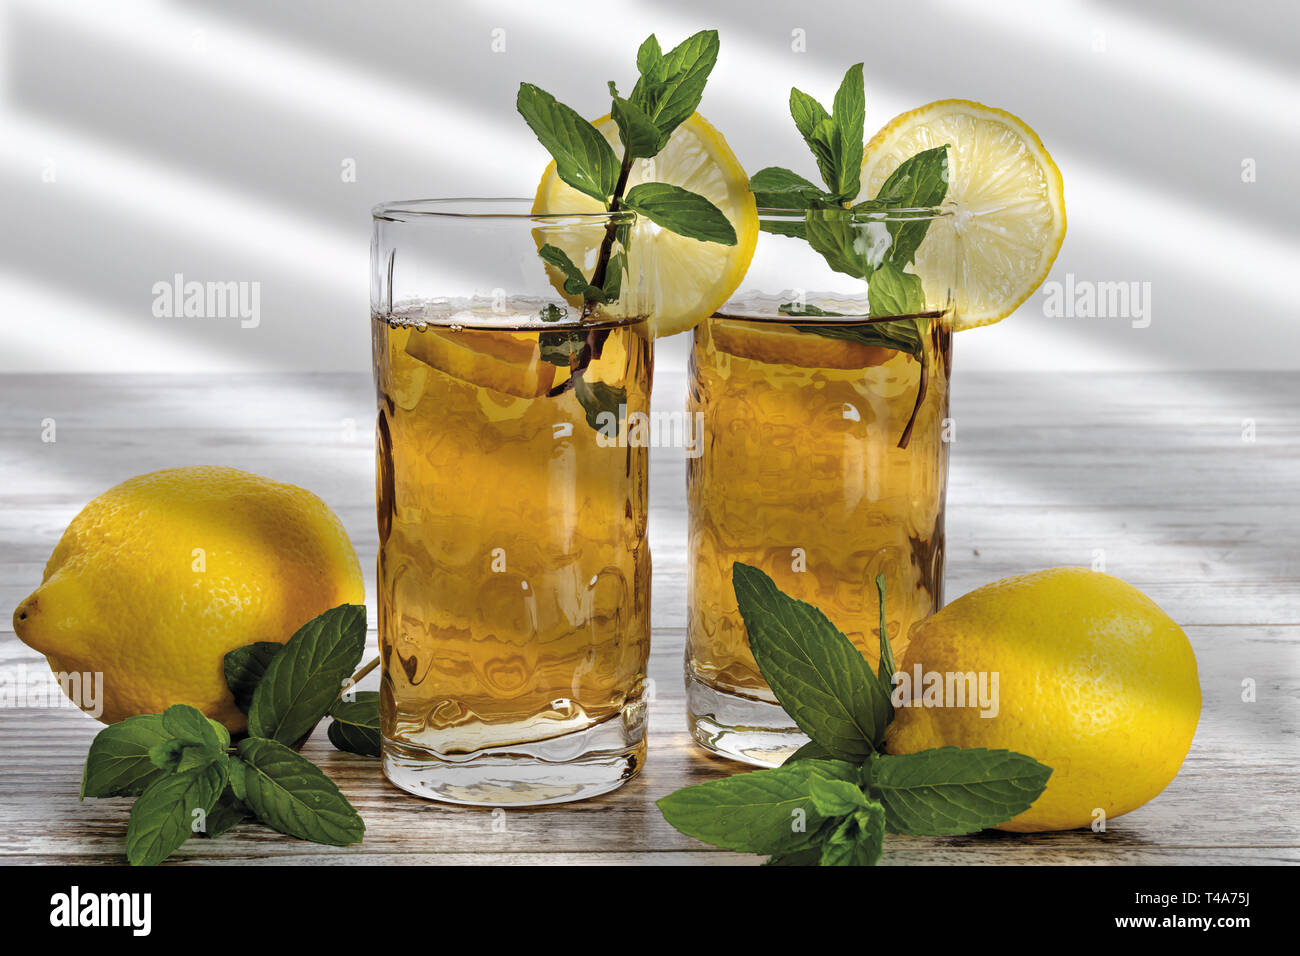 Tè al limone con menta en raison bicchieri fronte Banque D'Images